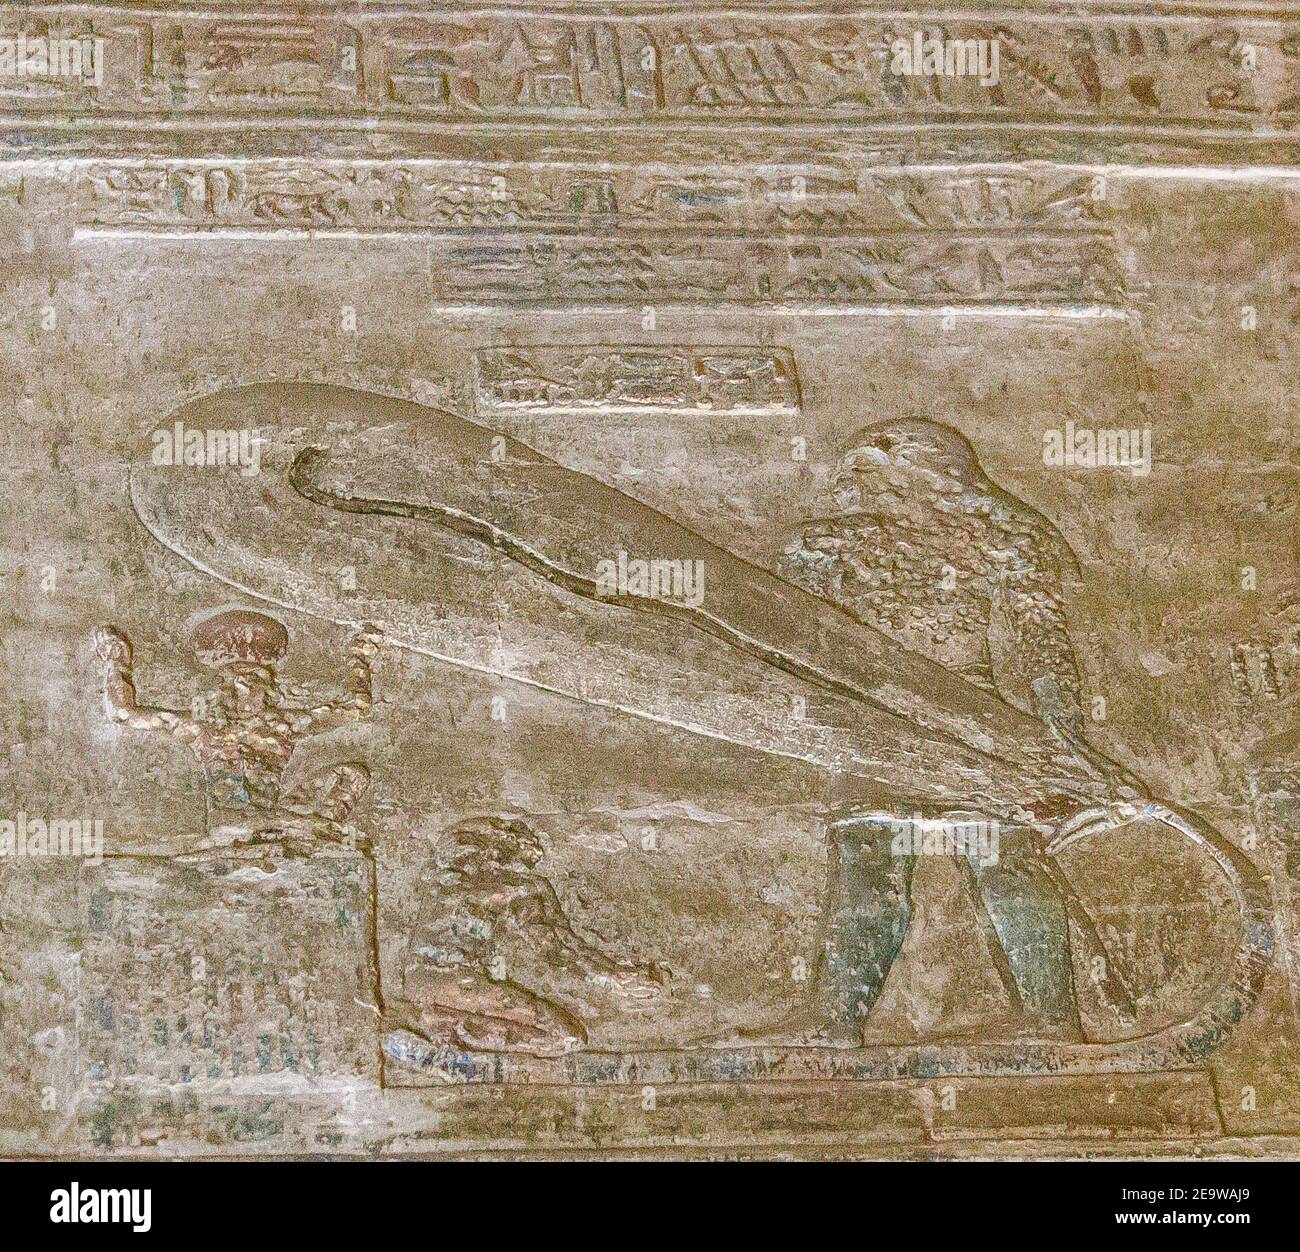 Ägypten, Dendera Tempel, in einem Raum, seltsame Szene namens "Glühbirne", manchmal (zu Unrecht) als Beweis dafür, dass die alten Ägypter wussten Strom gesehen. Stockfoto